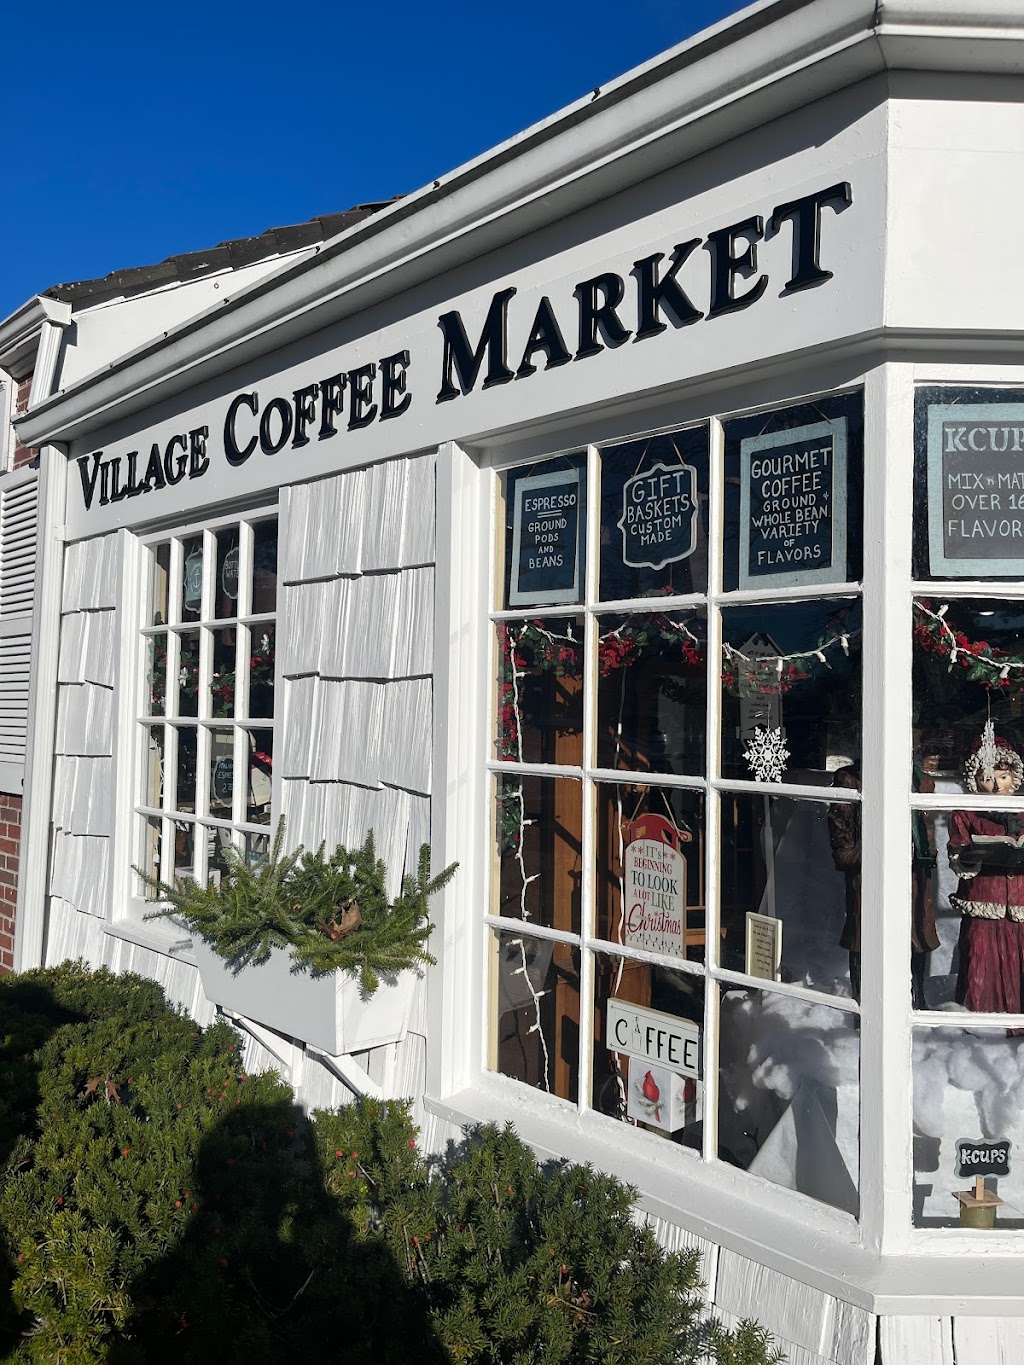 Village Coffee Market | 131 Main St, Stony Brook, NY 11790 | Phone: (631) 675-9525